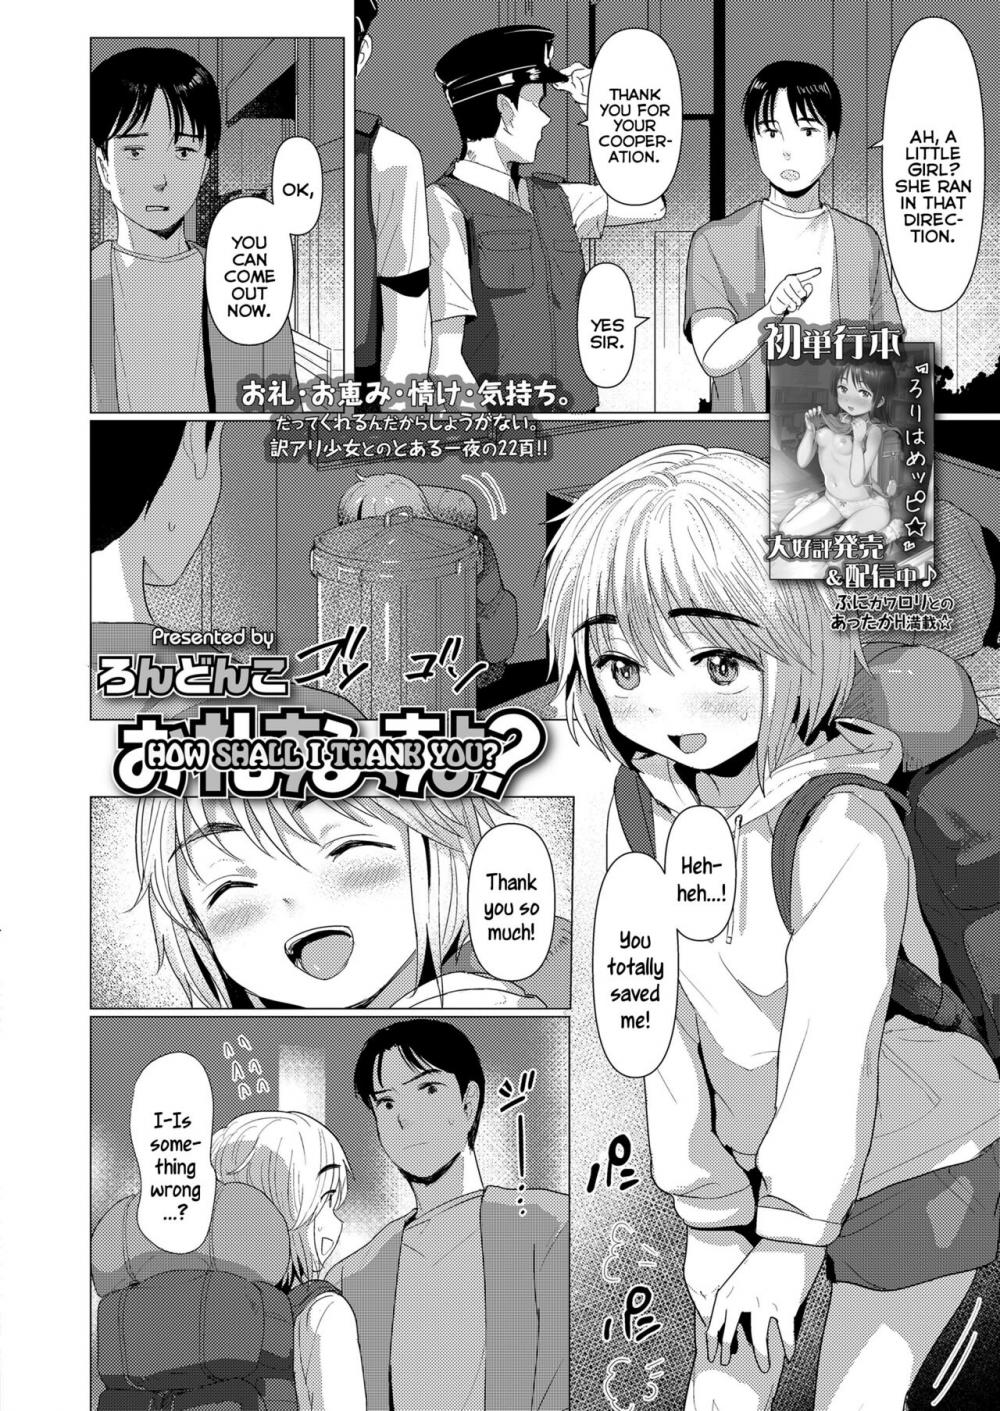 Hentai Manga Comic-How Shall I Thank You?-Read-2